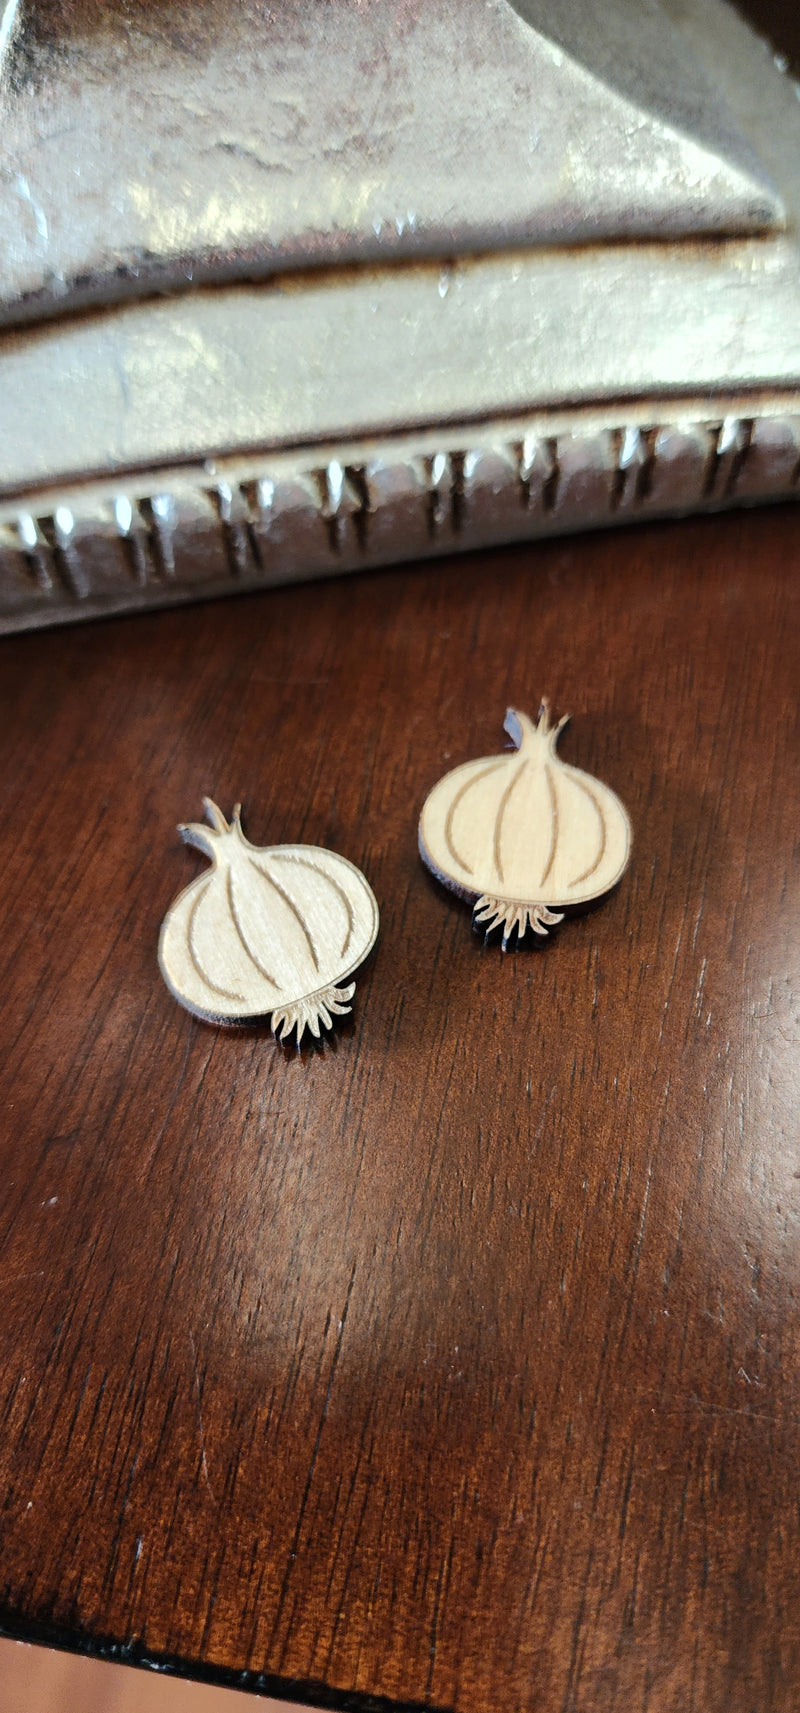 Onion earrings